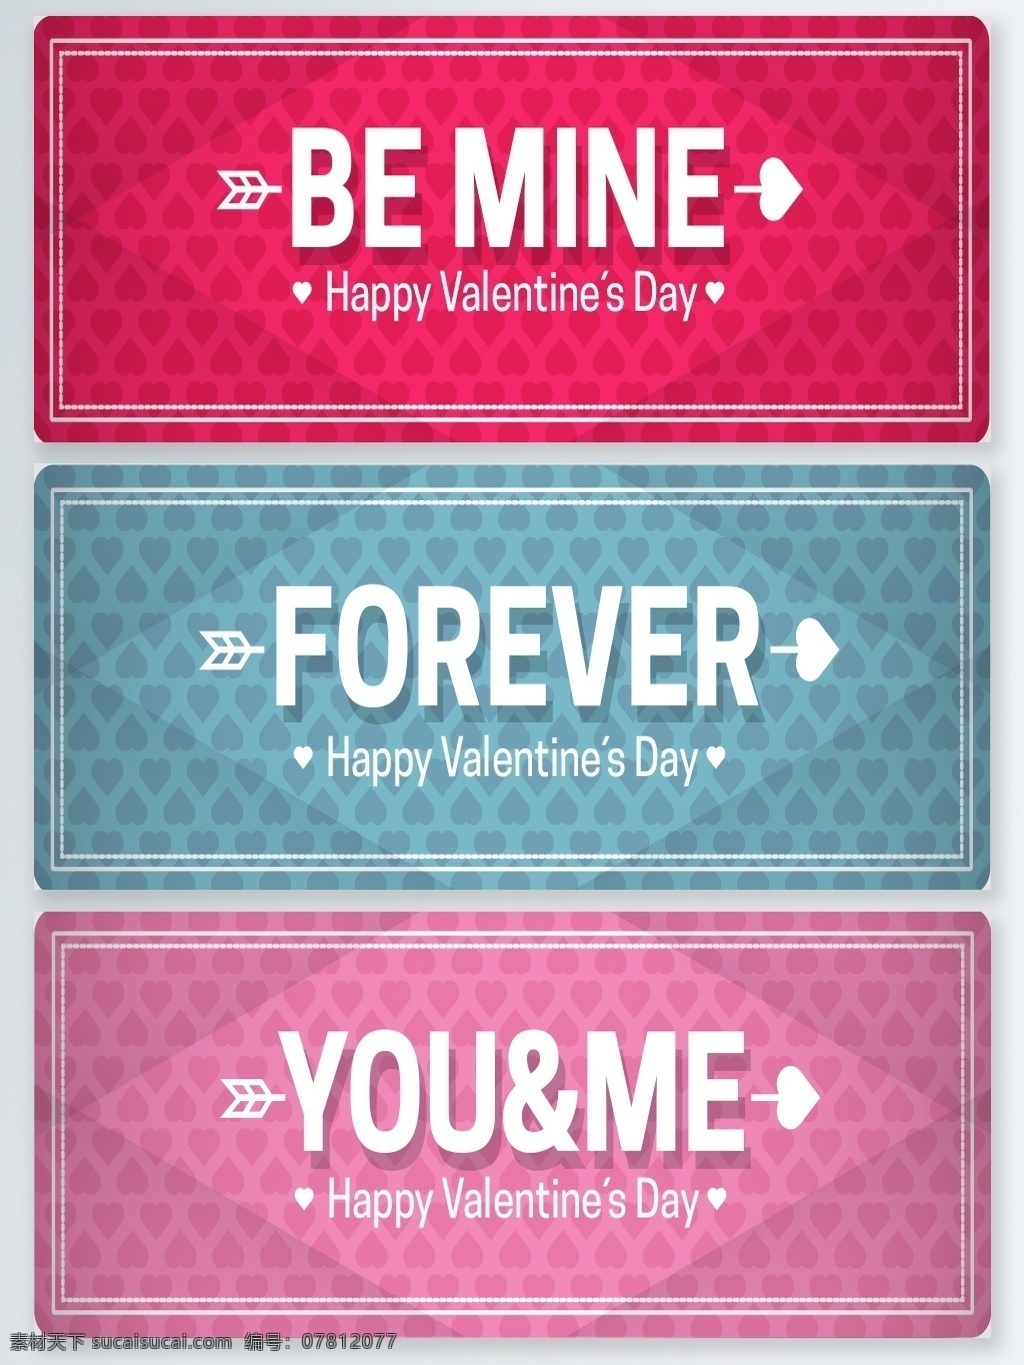 情人节 矢量 广告 背景 图 day forever happy valentines 粉色 广告背景 简约风格 蓝色 枚红色